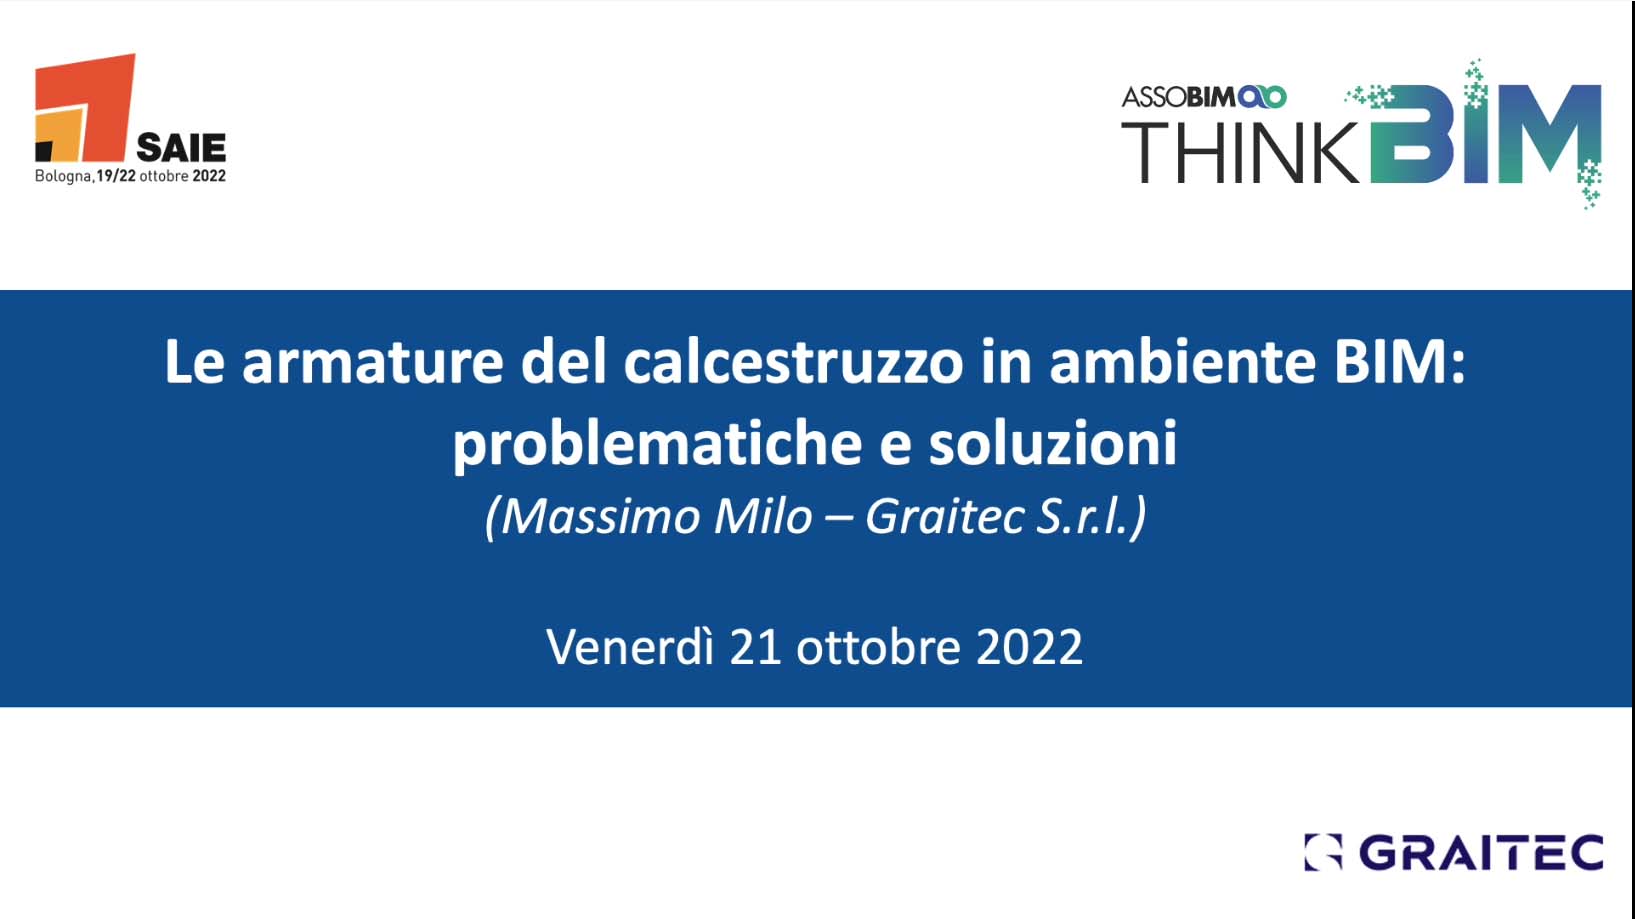 SAIE 2022 – Le armature del calcestruzzo in ambiente BIM: problematiche e soluzioni